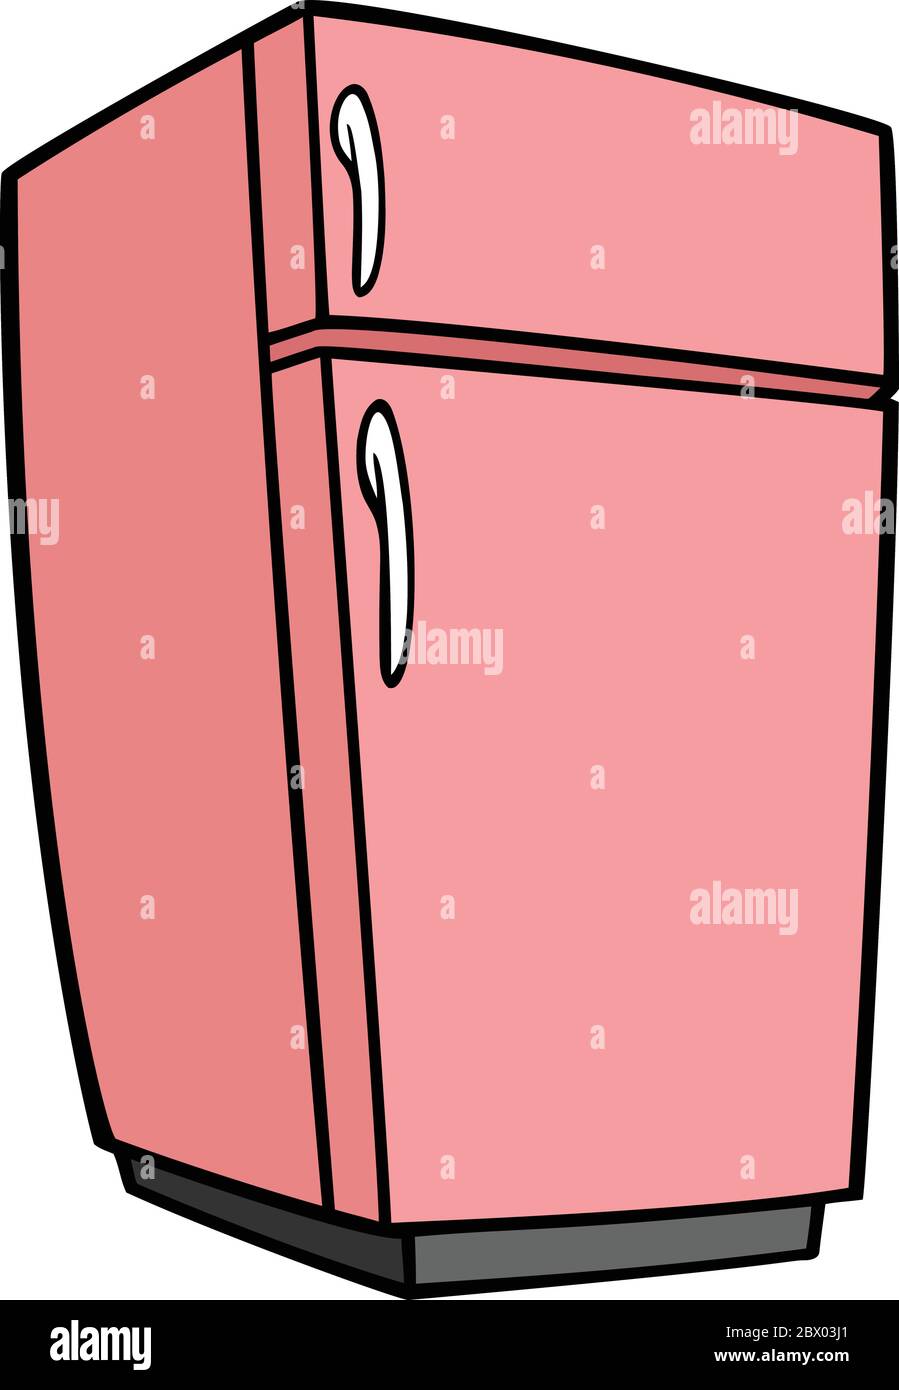 Pink Retro Refrigerator - A cartoon illustration of a Pink Retro Refrigerator. Stock Vector